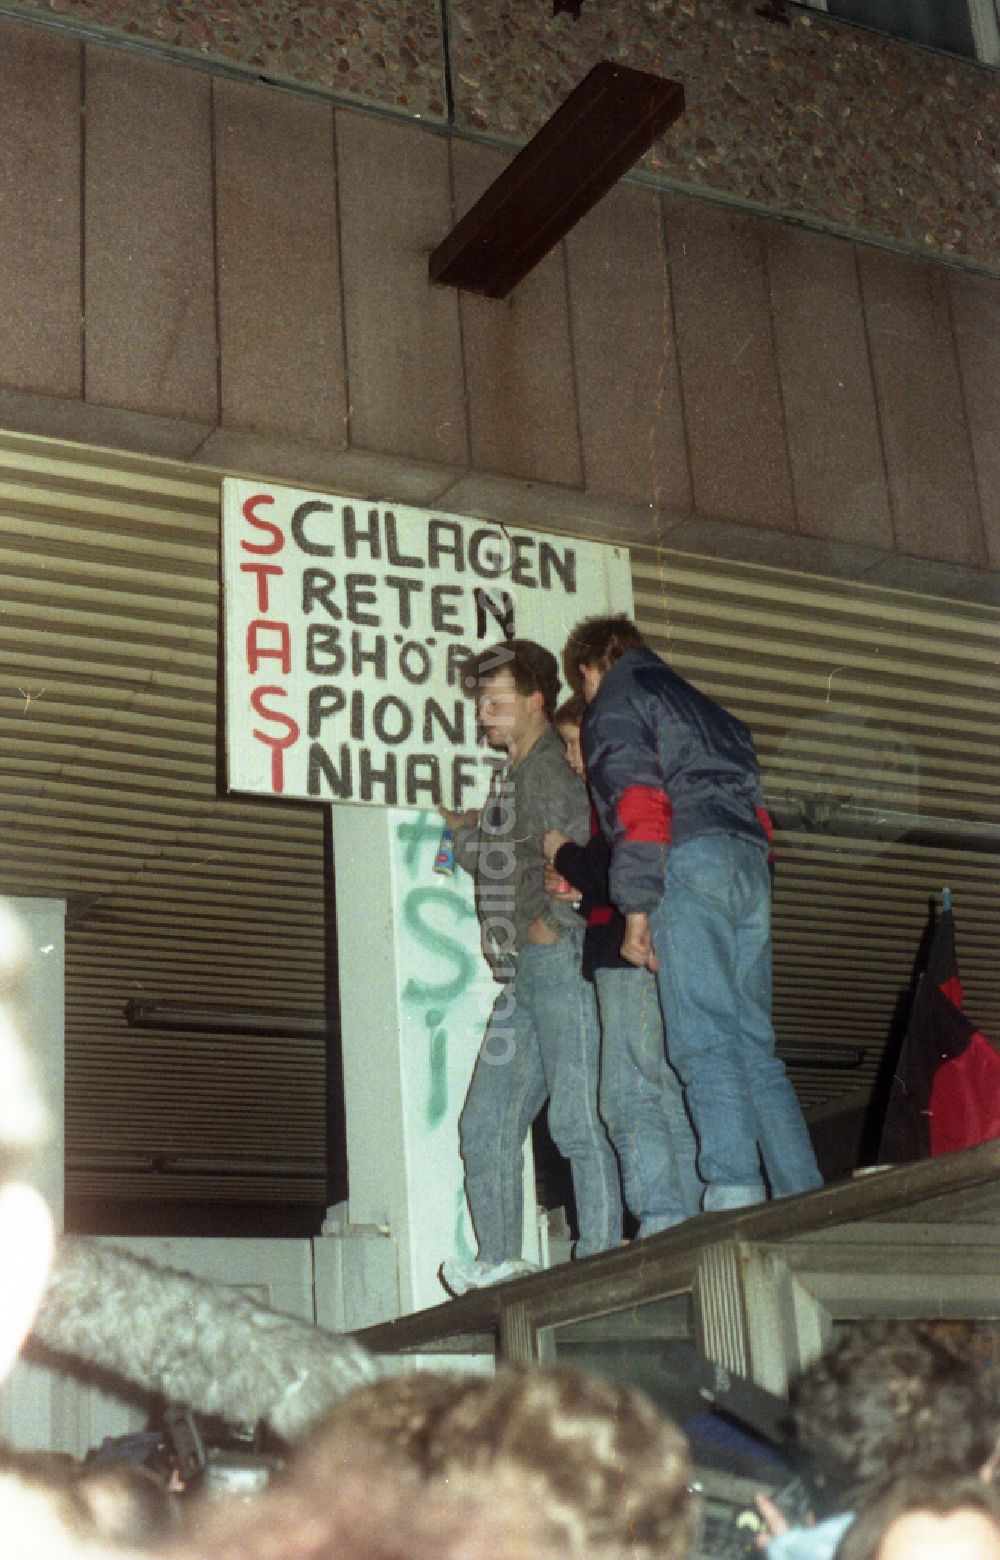 Berlin: Besetzung der MfS - Zentrale Ministerium für Staatssicherheit in der Normannenstraße in Berlin in der DDR